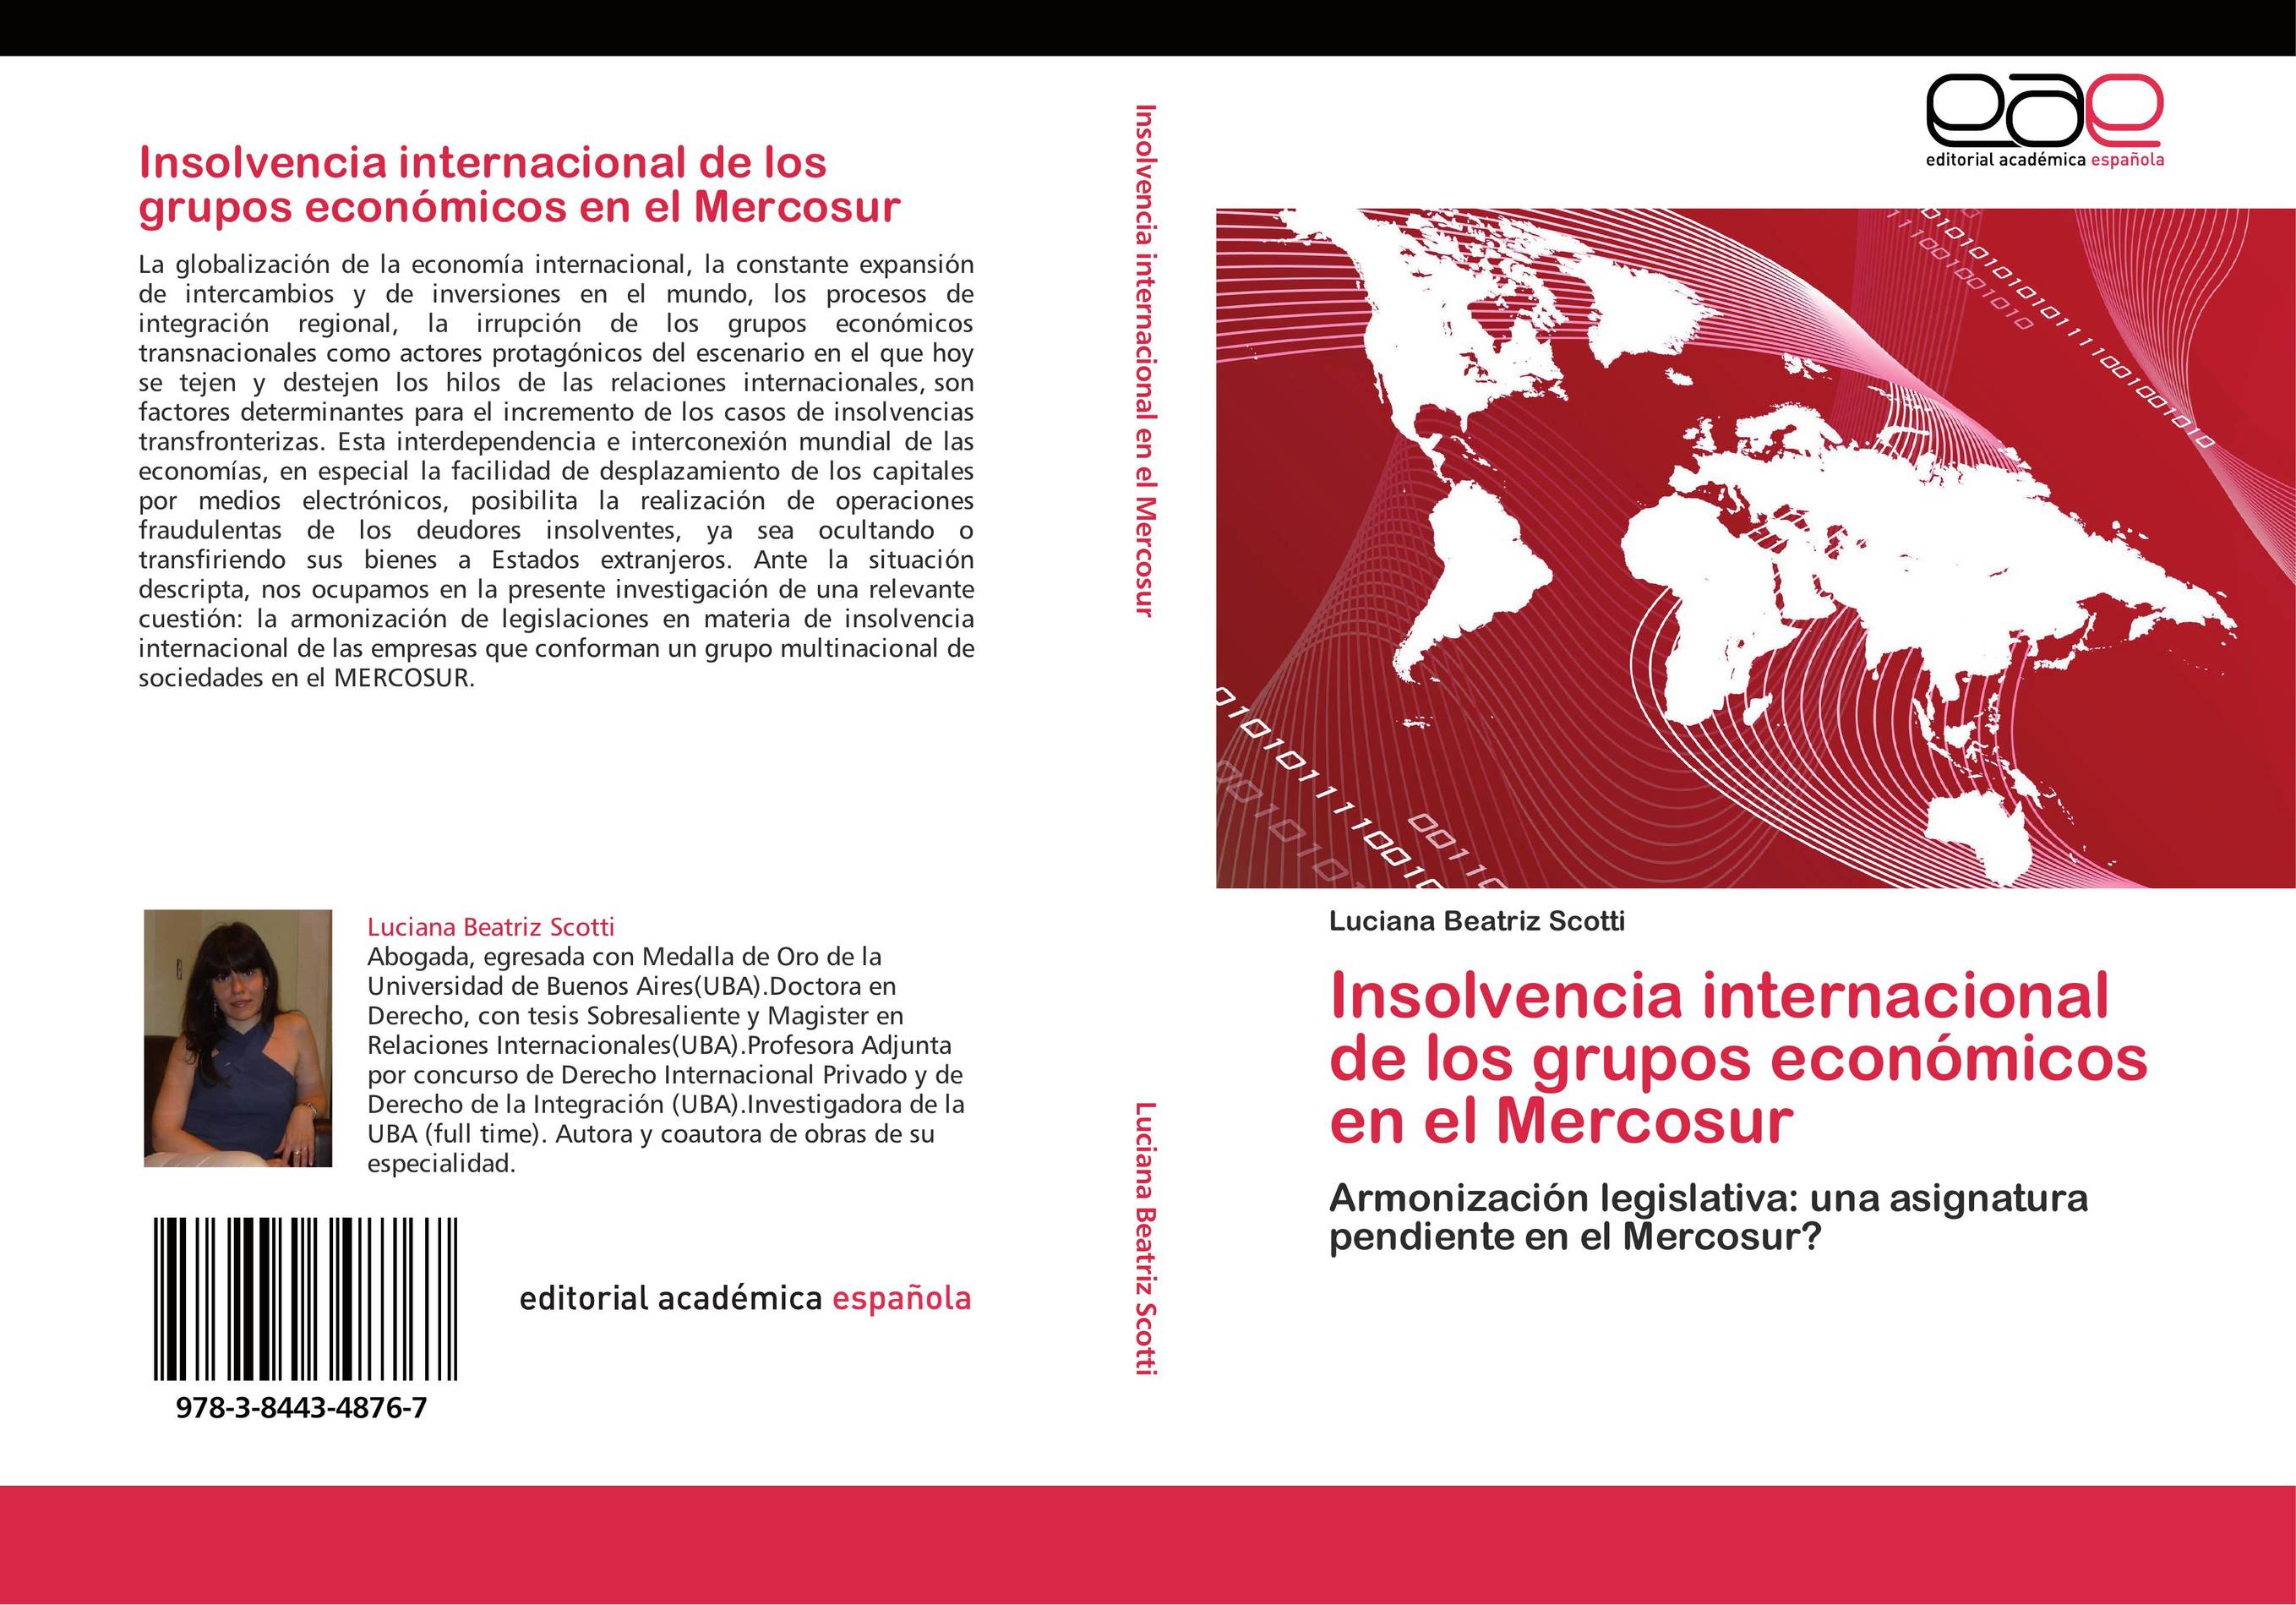 Insolvencia internacional de los grupos económicos en el Mercosur